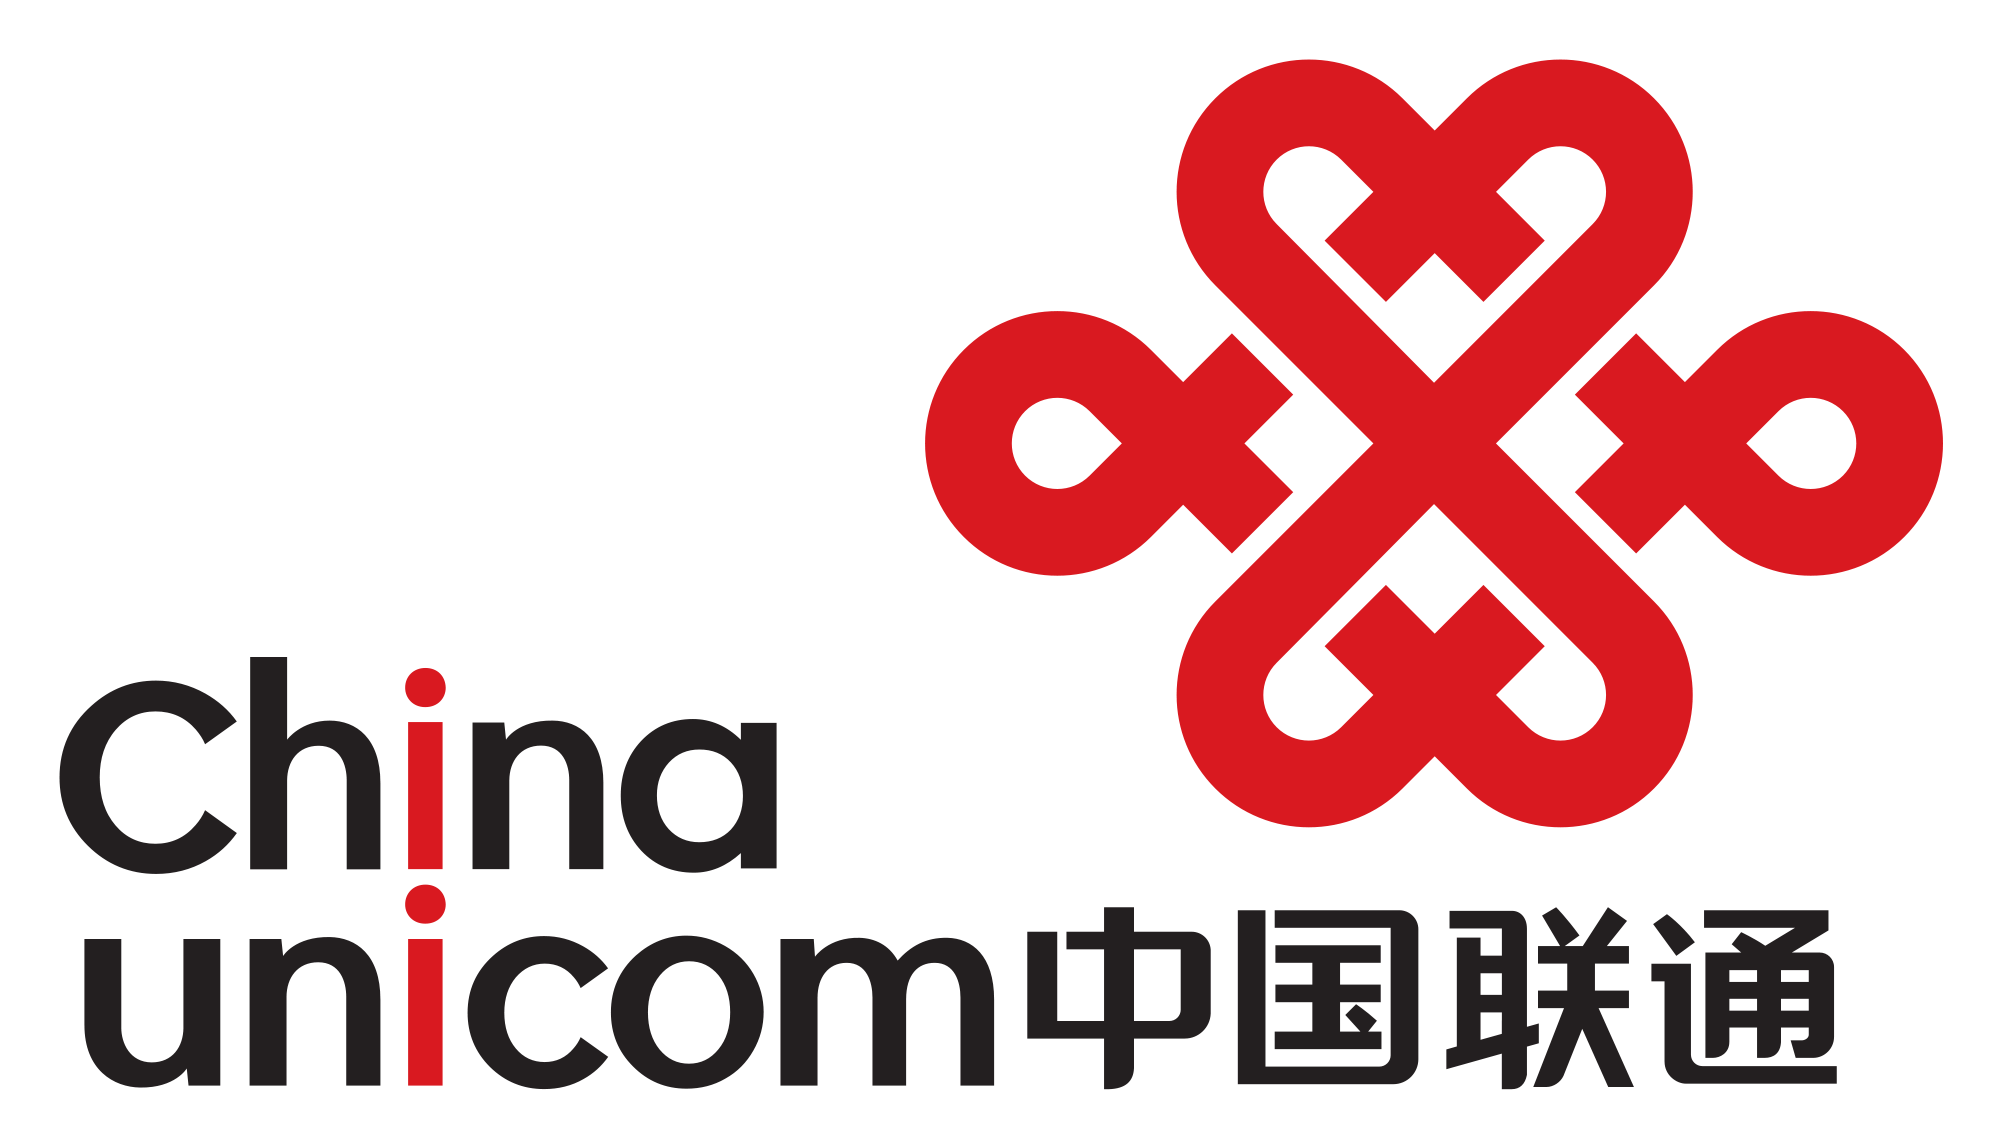 China Unicom Logo photo - 1